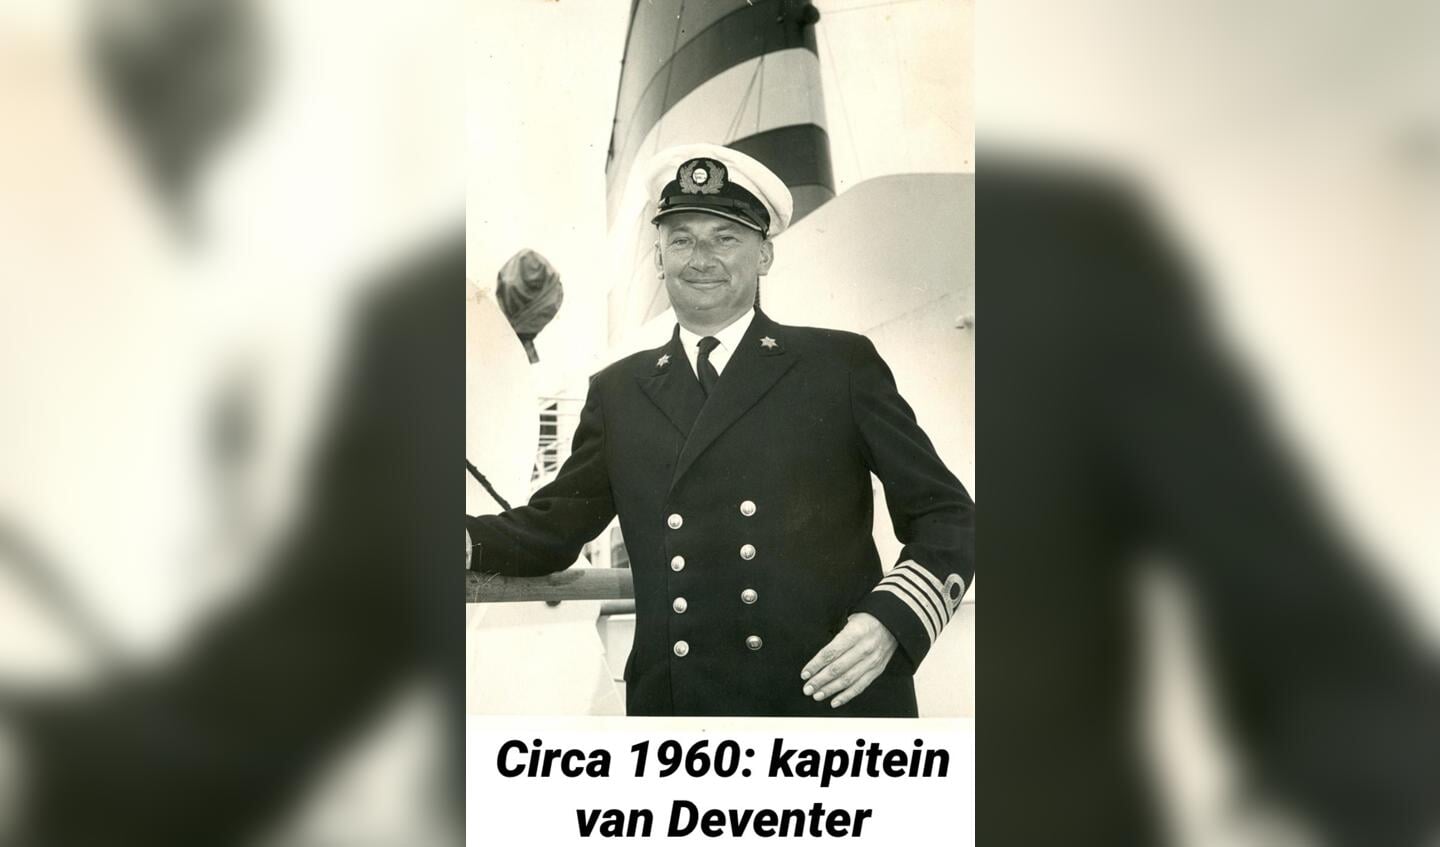 Kapitein Van Deventer, circa 1960.